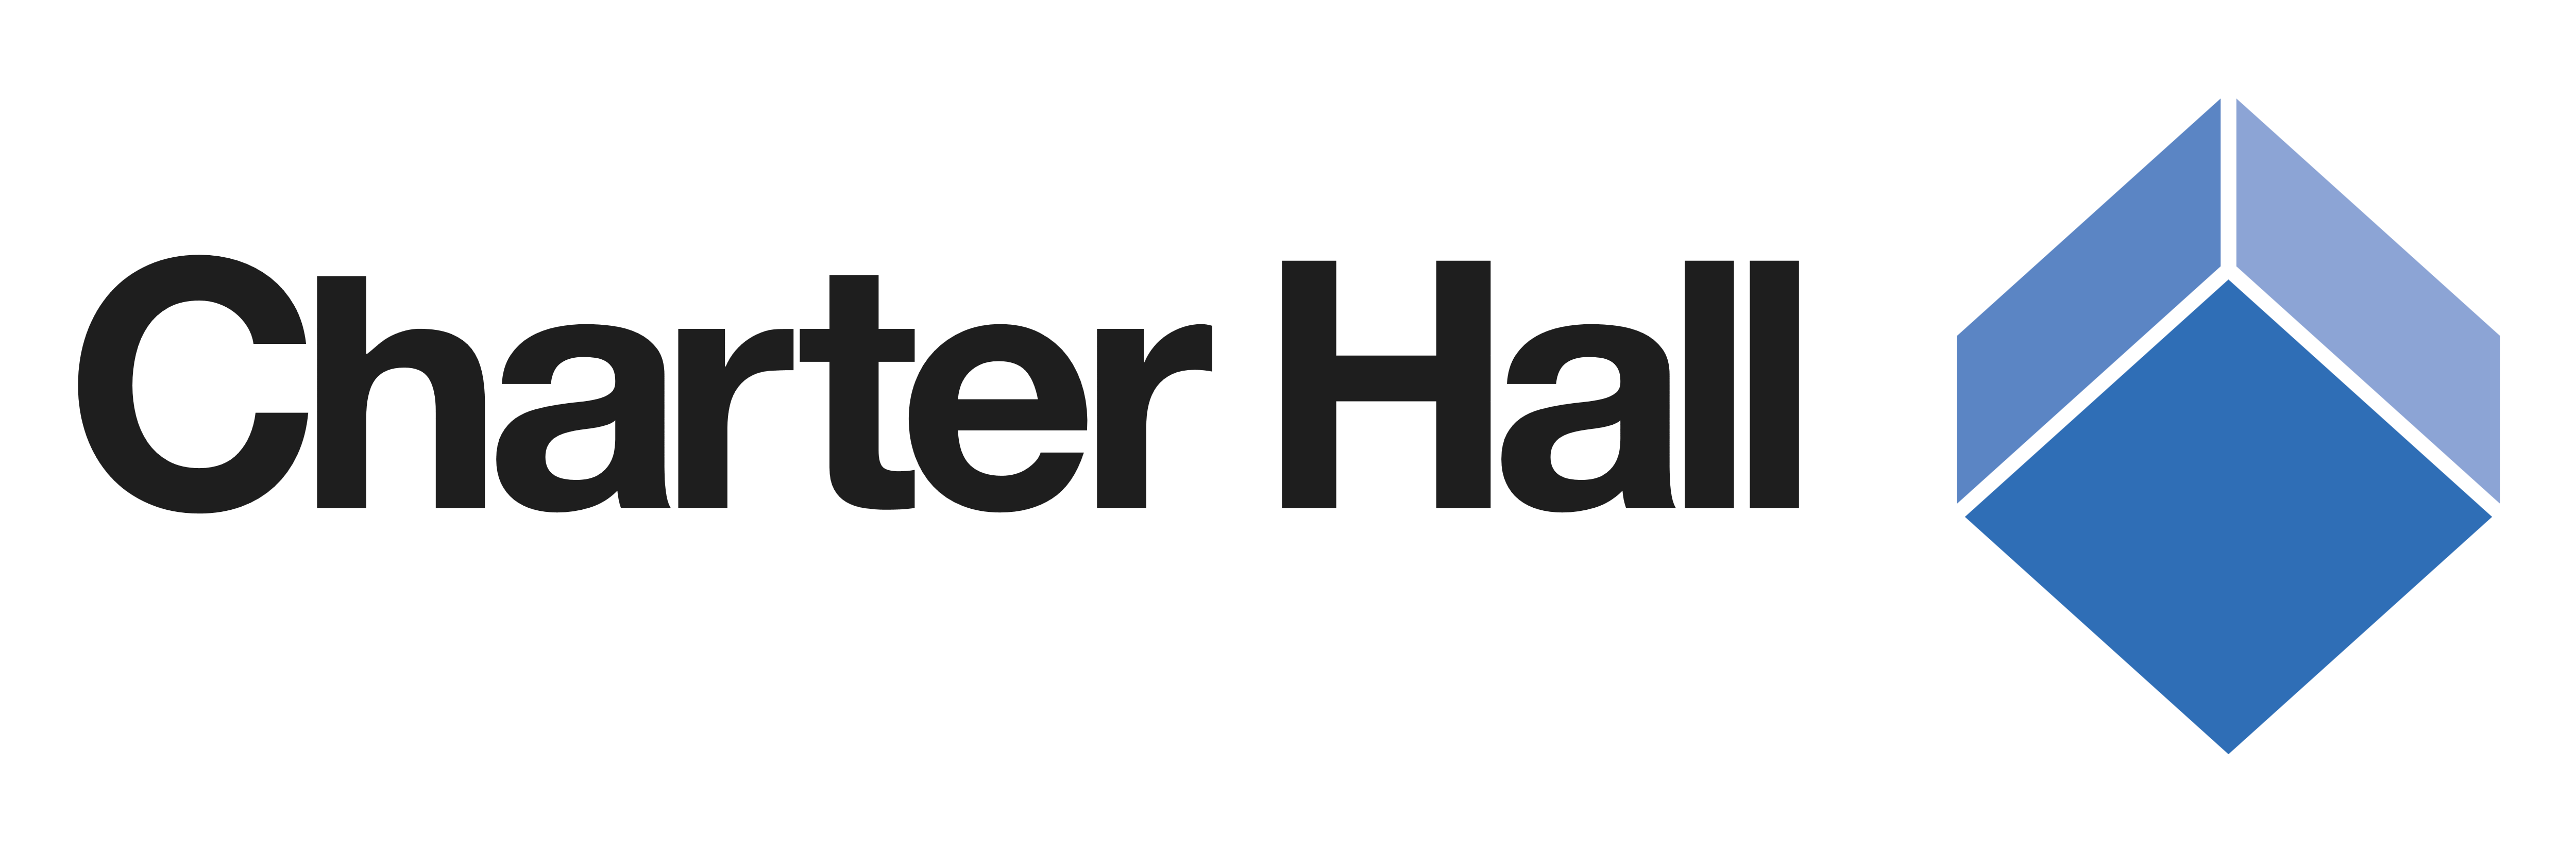 Charter Hall Logos